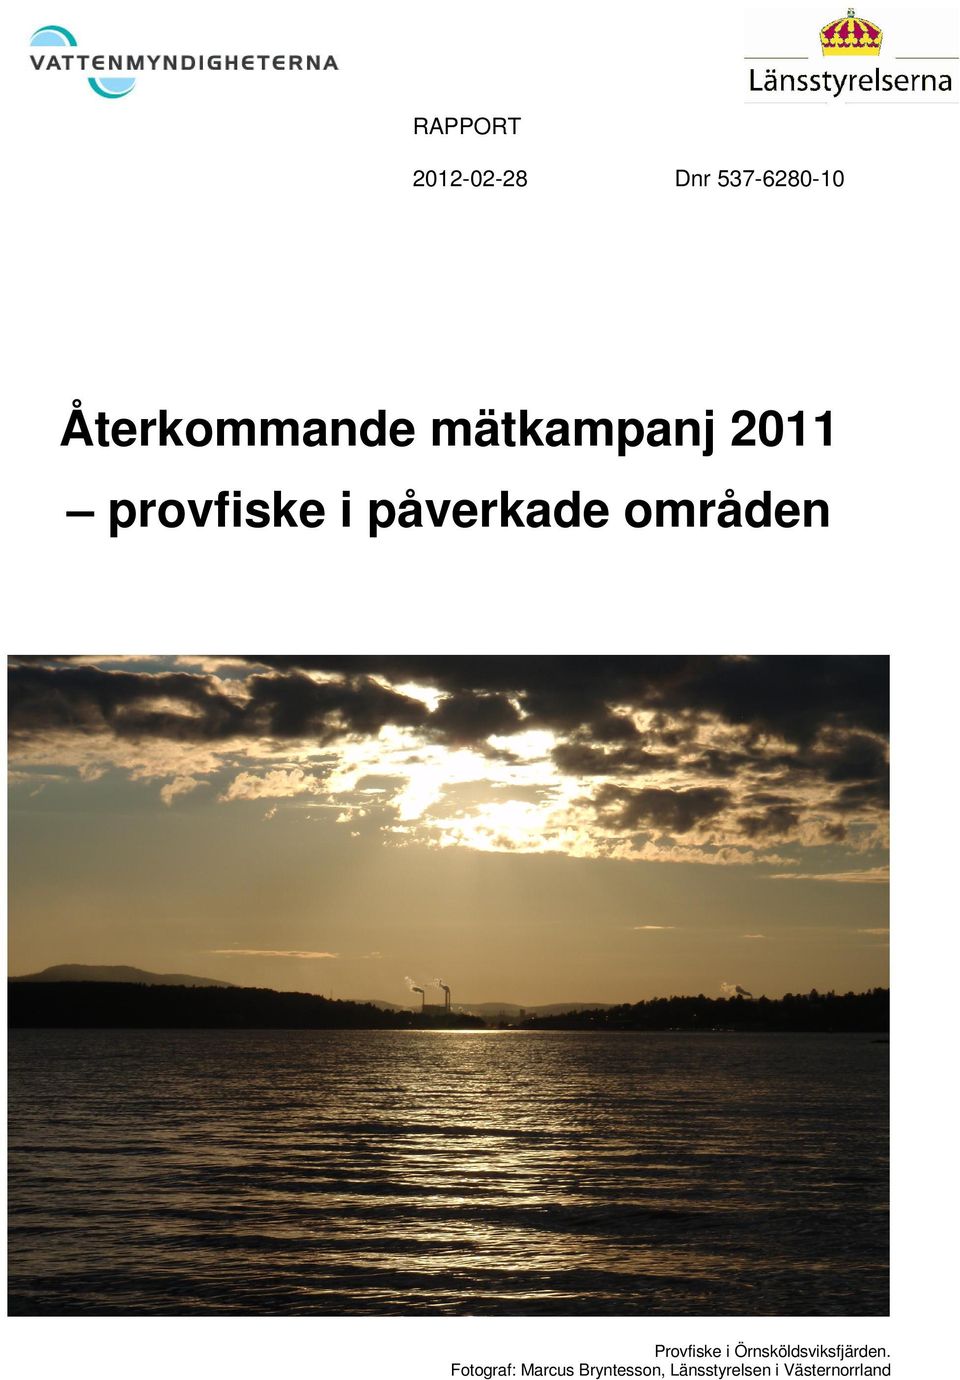 Provfiske i Örnsköldsviksfjärden.